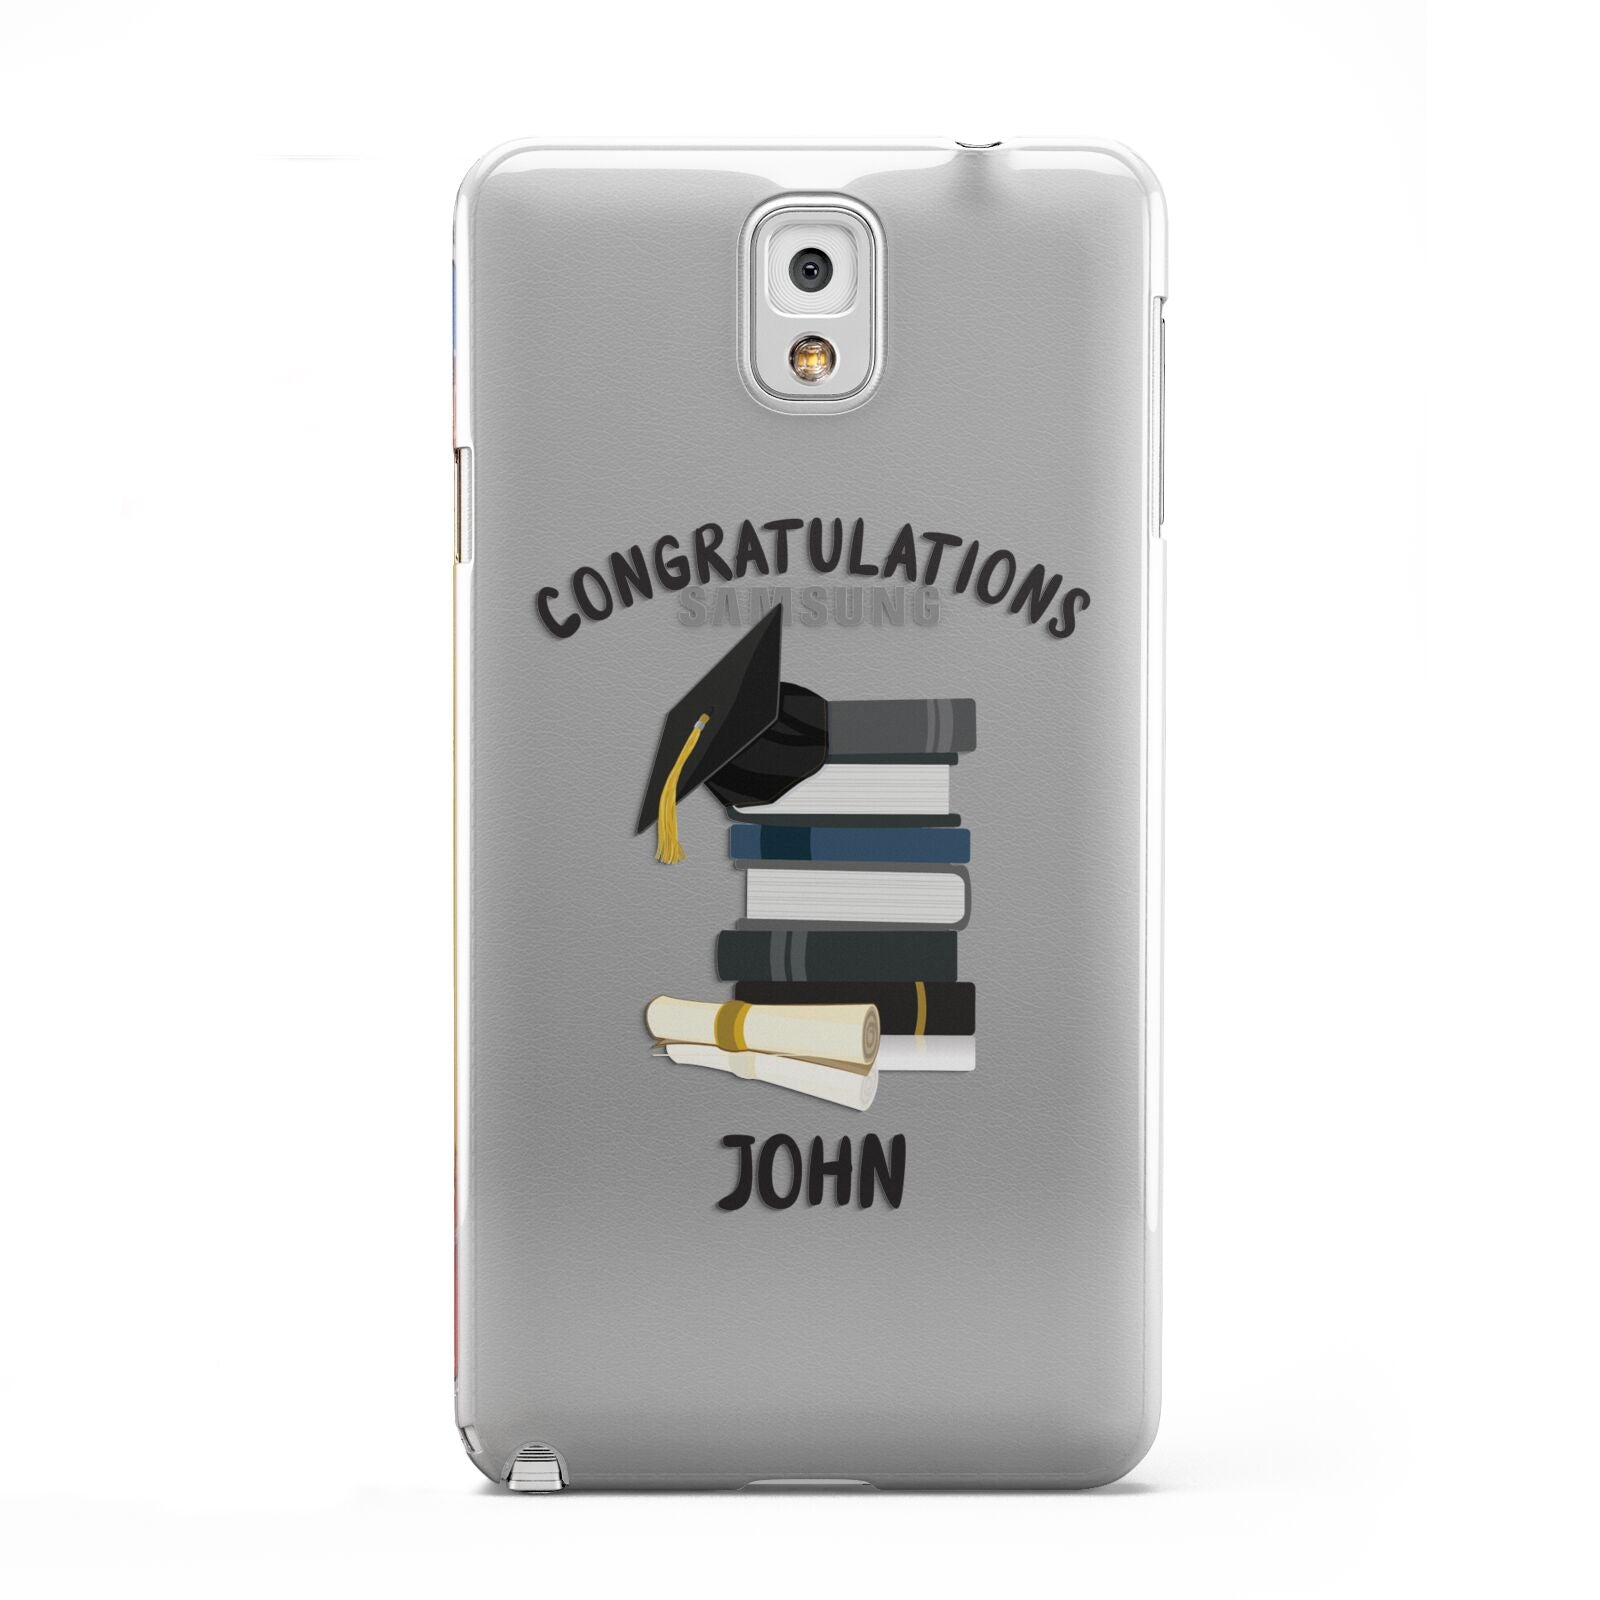 Congratulations Graduate Samsung Galaxy Note 3 Case